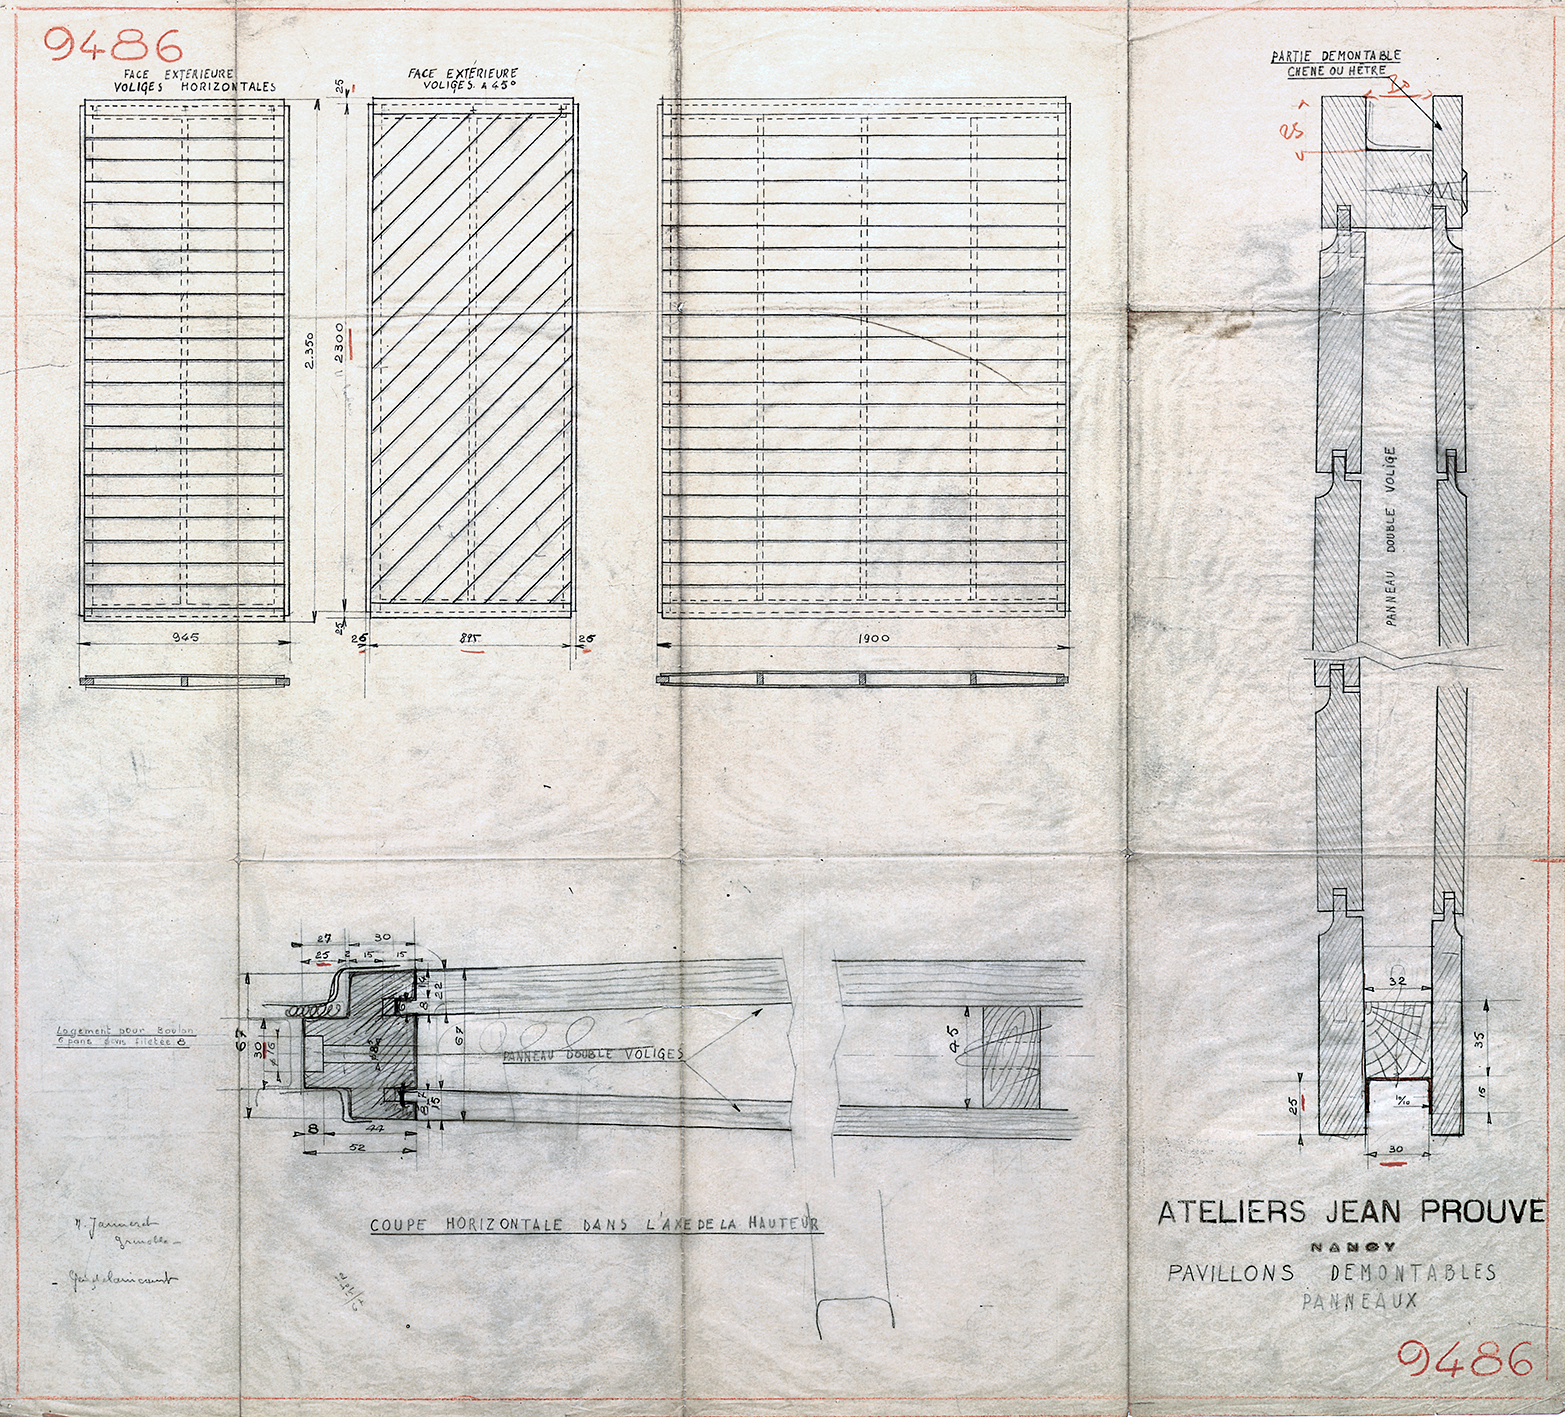 Ateliers Jean Prouvé. « Pavillons démontables, panneaux », plan n° 9486, 10 octobre 1944.